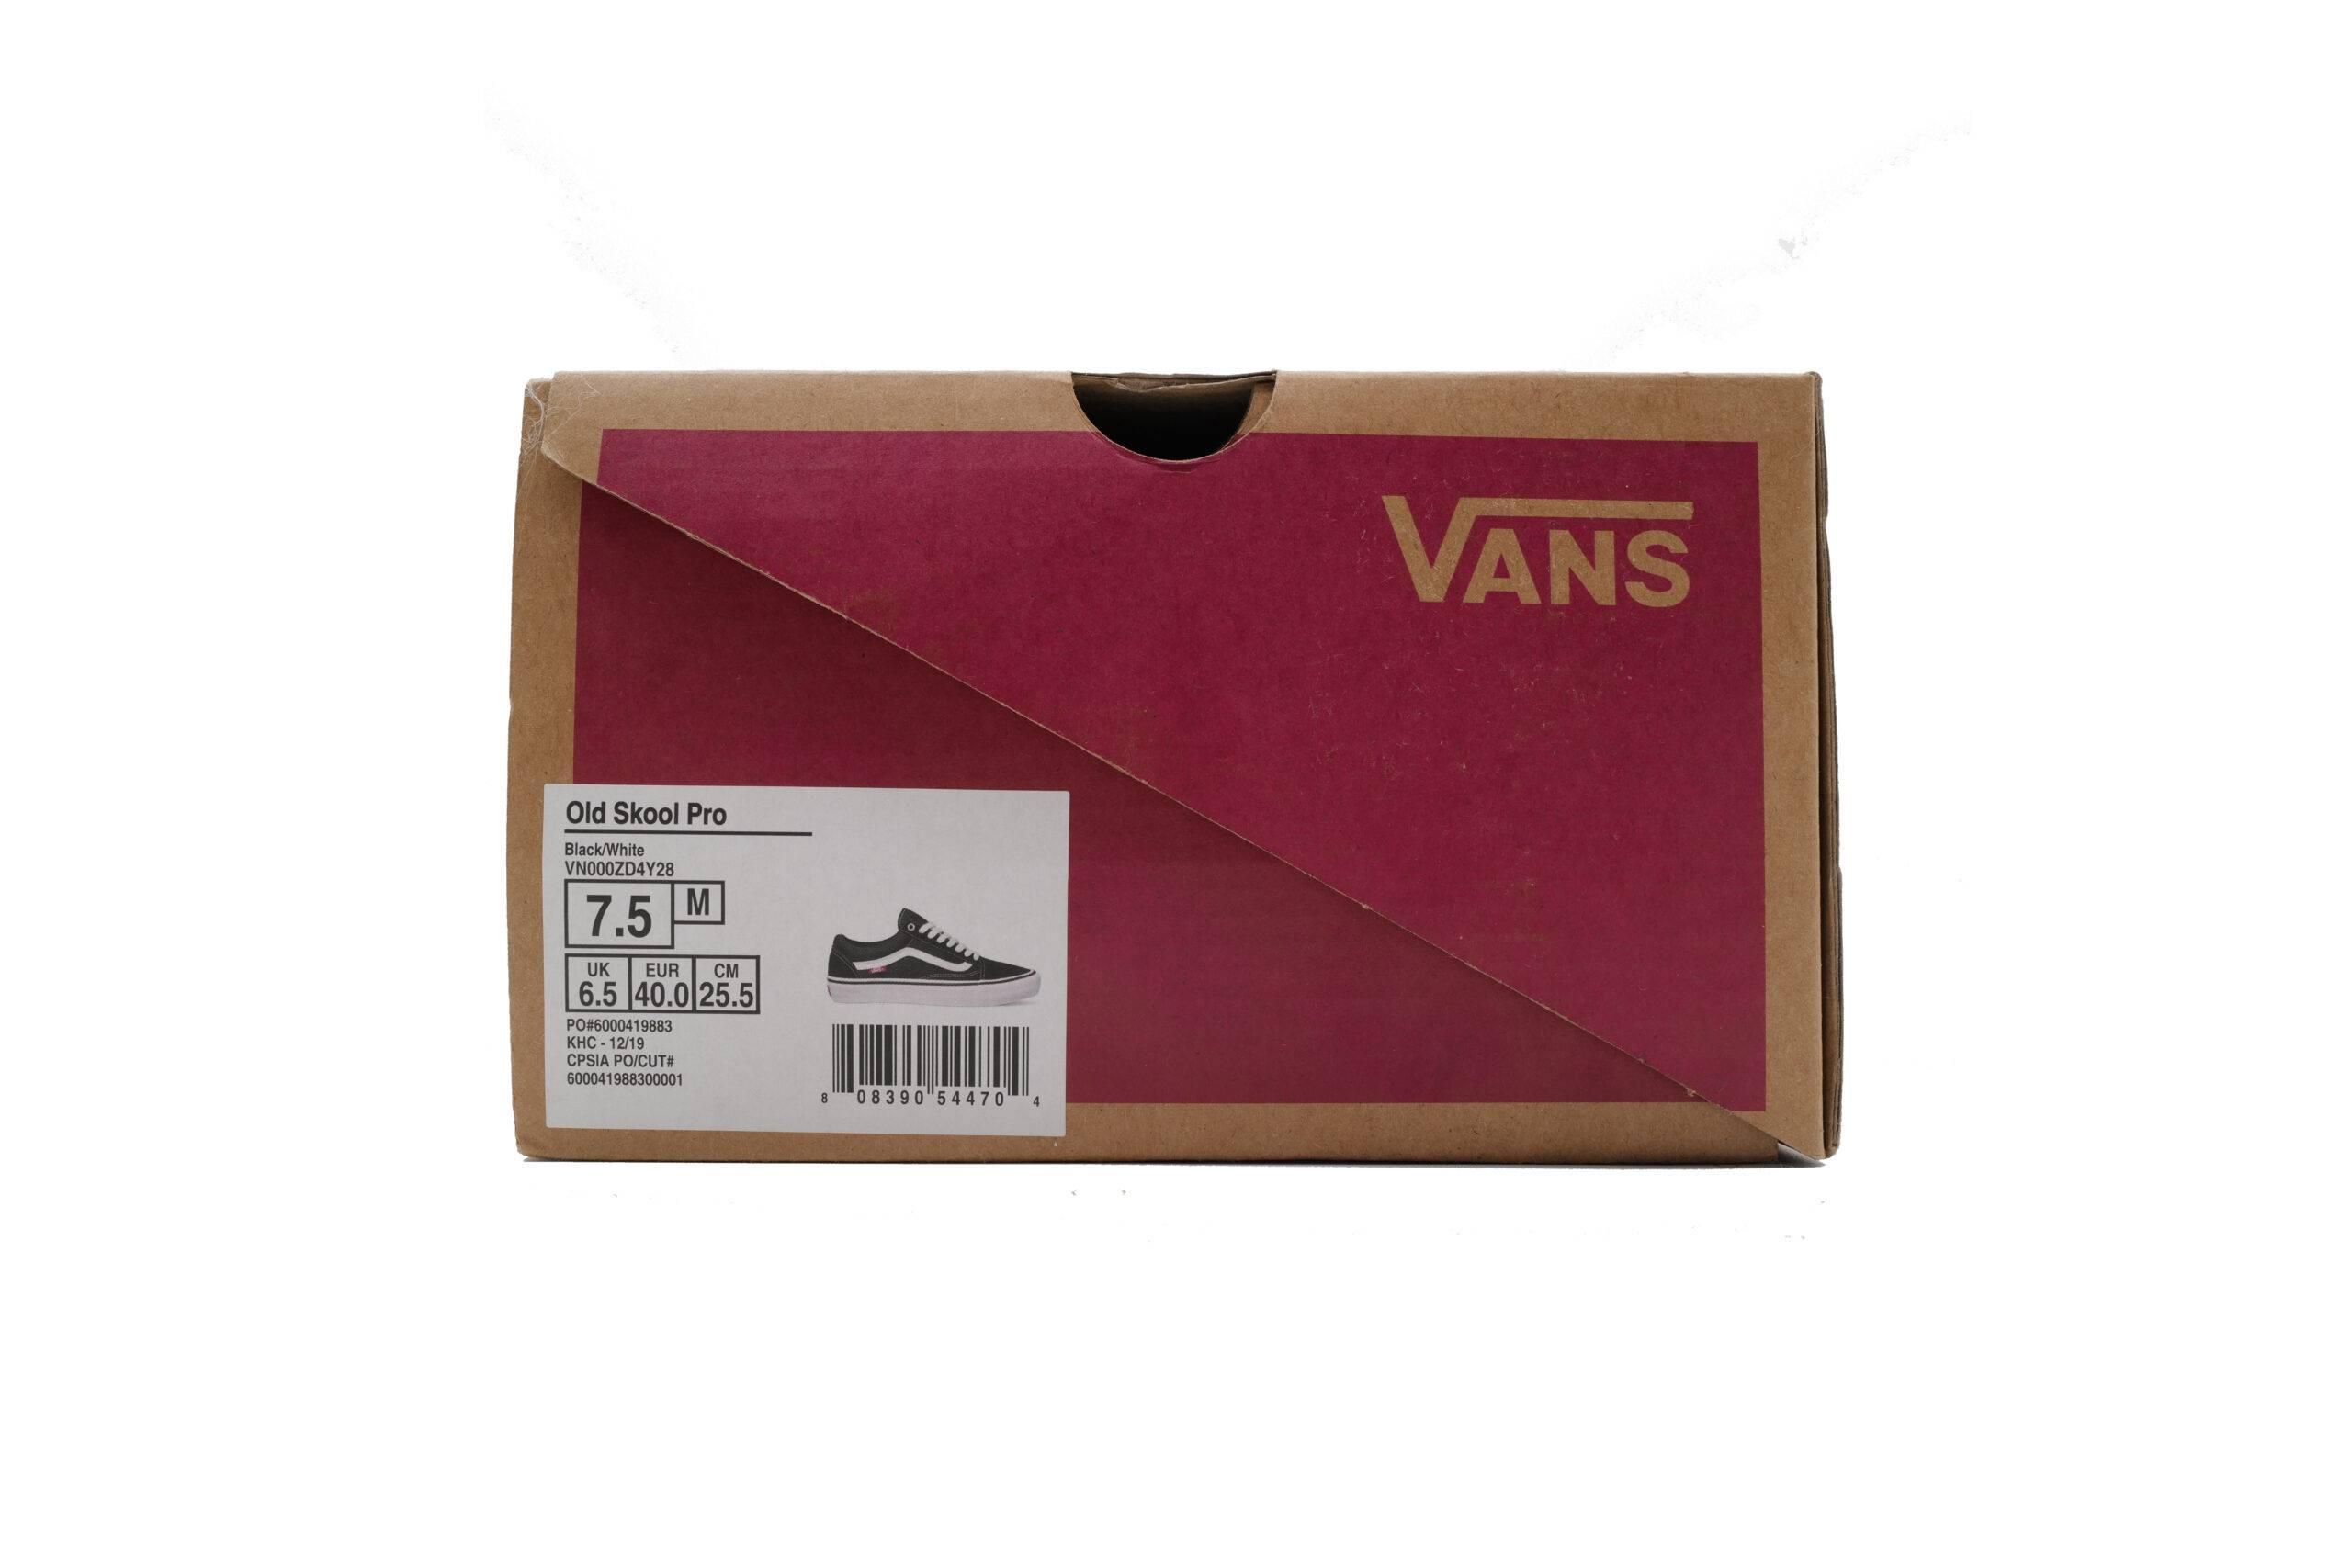 新版本的 vans skate 系列则用到了重新设计的新版鞋盒,可谓诚意满满